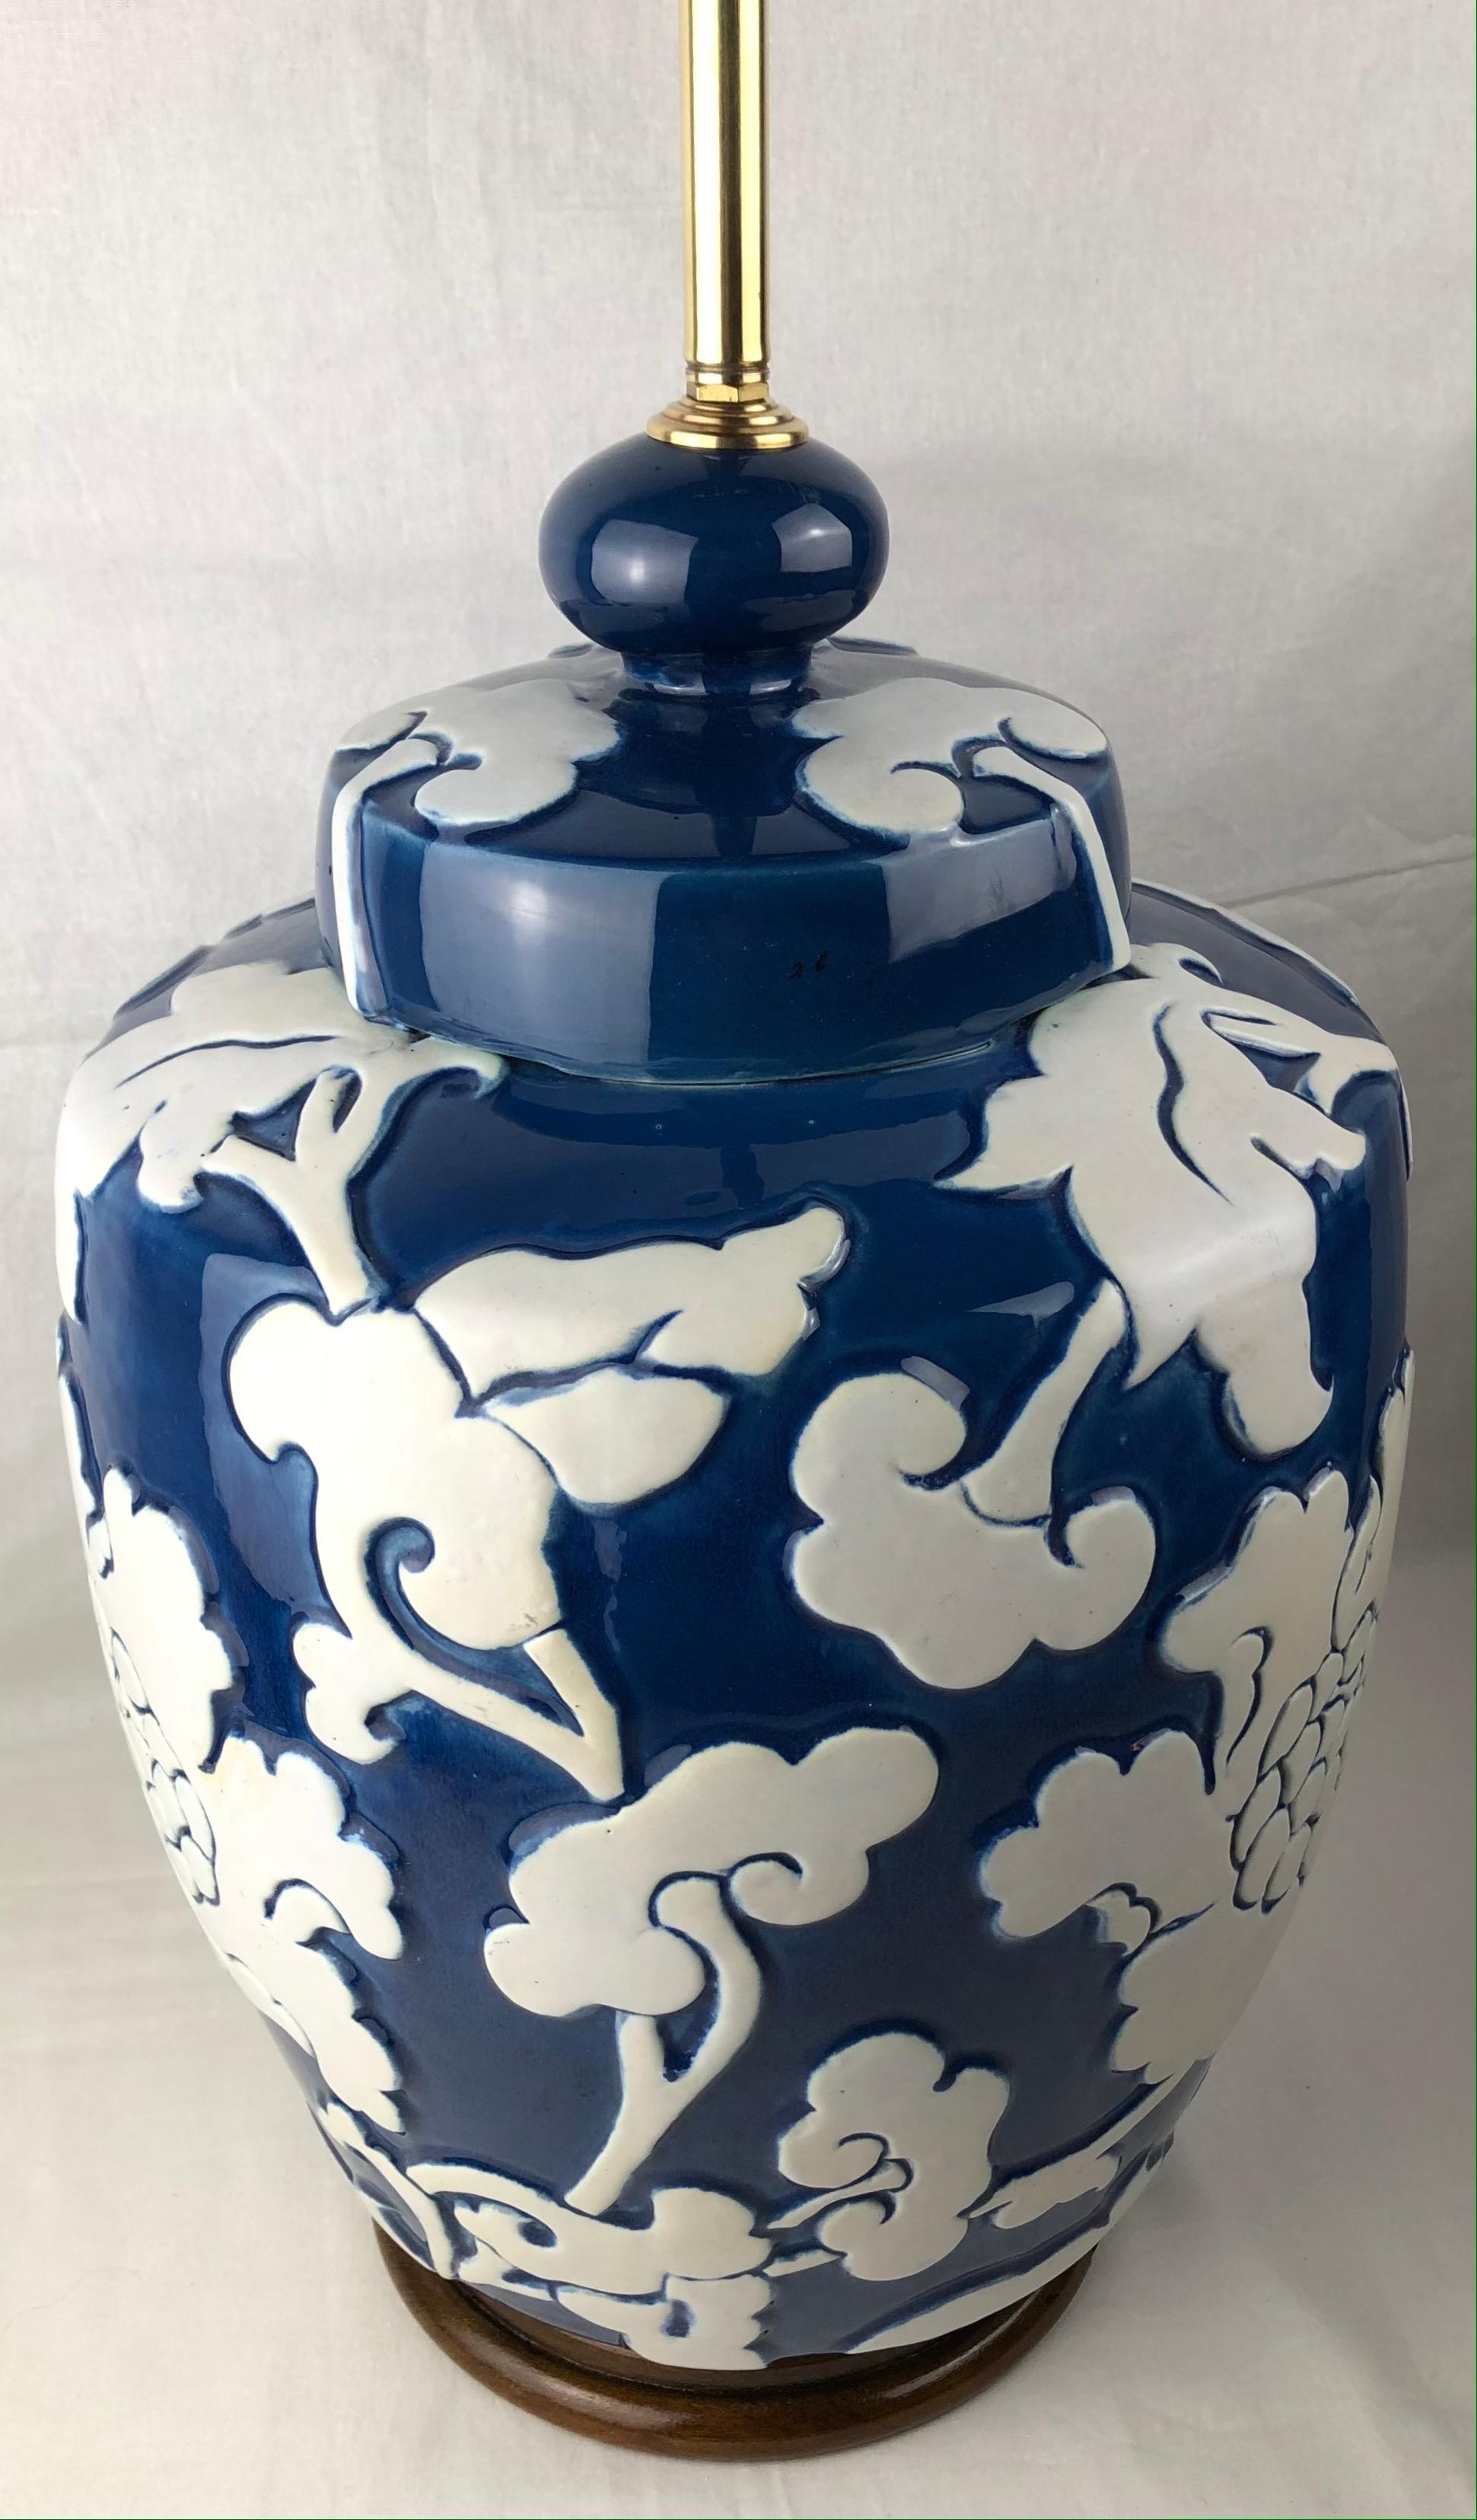 Lampe de table en porcelaine française des années 1920 à motif floral sur glaçure bleue et base en bois de noyer. Motifs en haut-relief. La provenance de cette belle lampe est une propriété importante à St-Rémy-de-Provence. 

Mesures :
Hauteur du